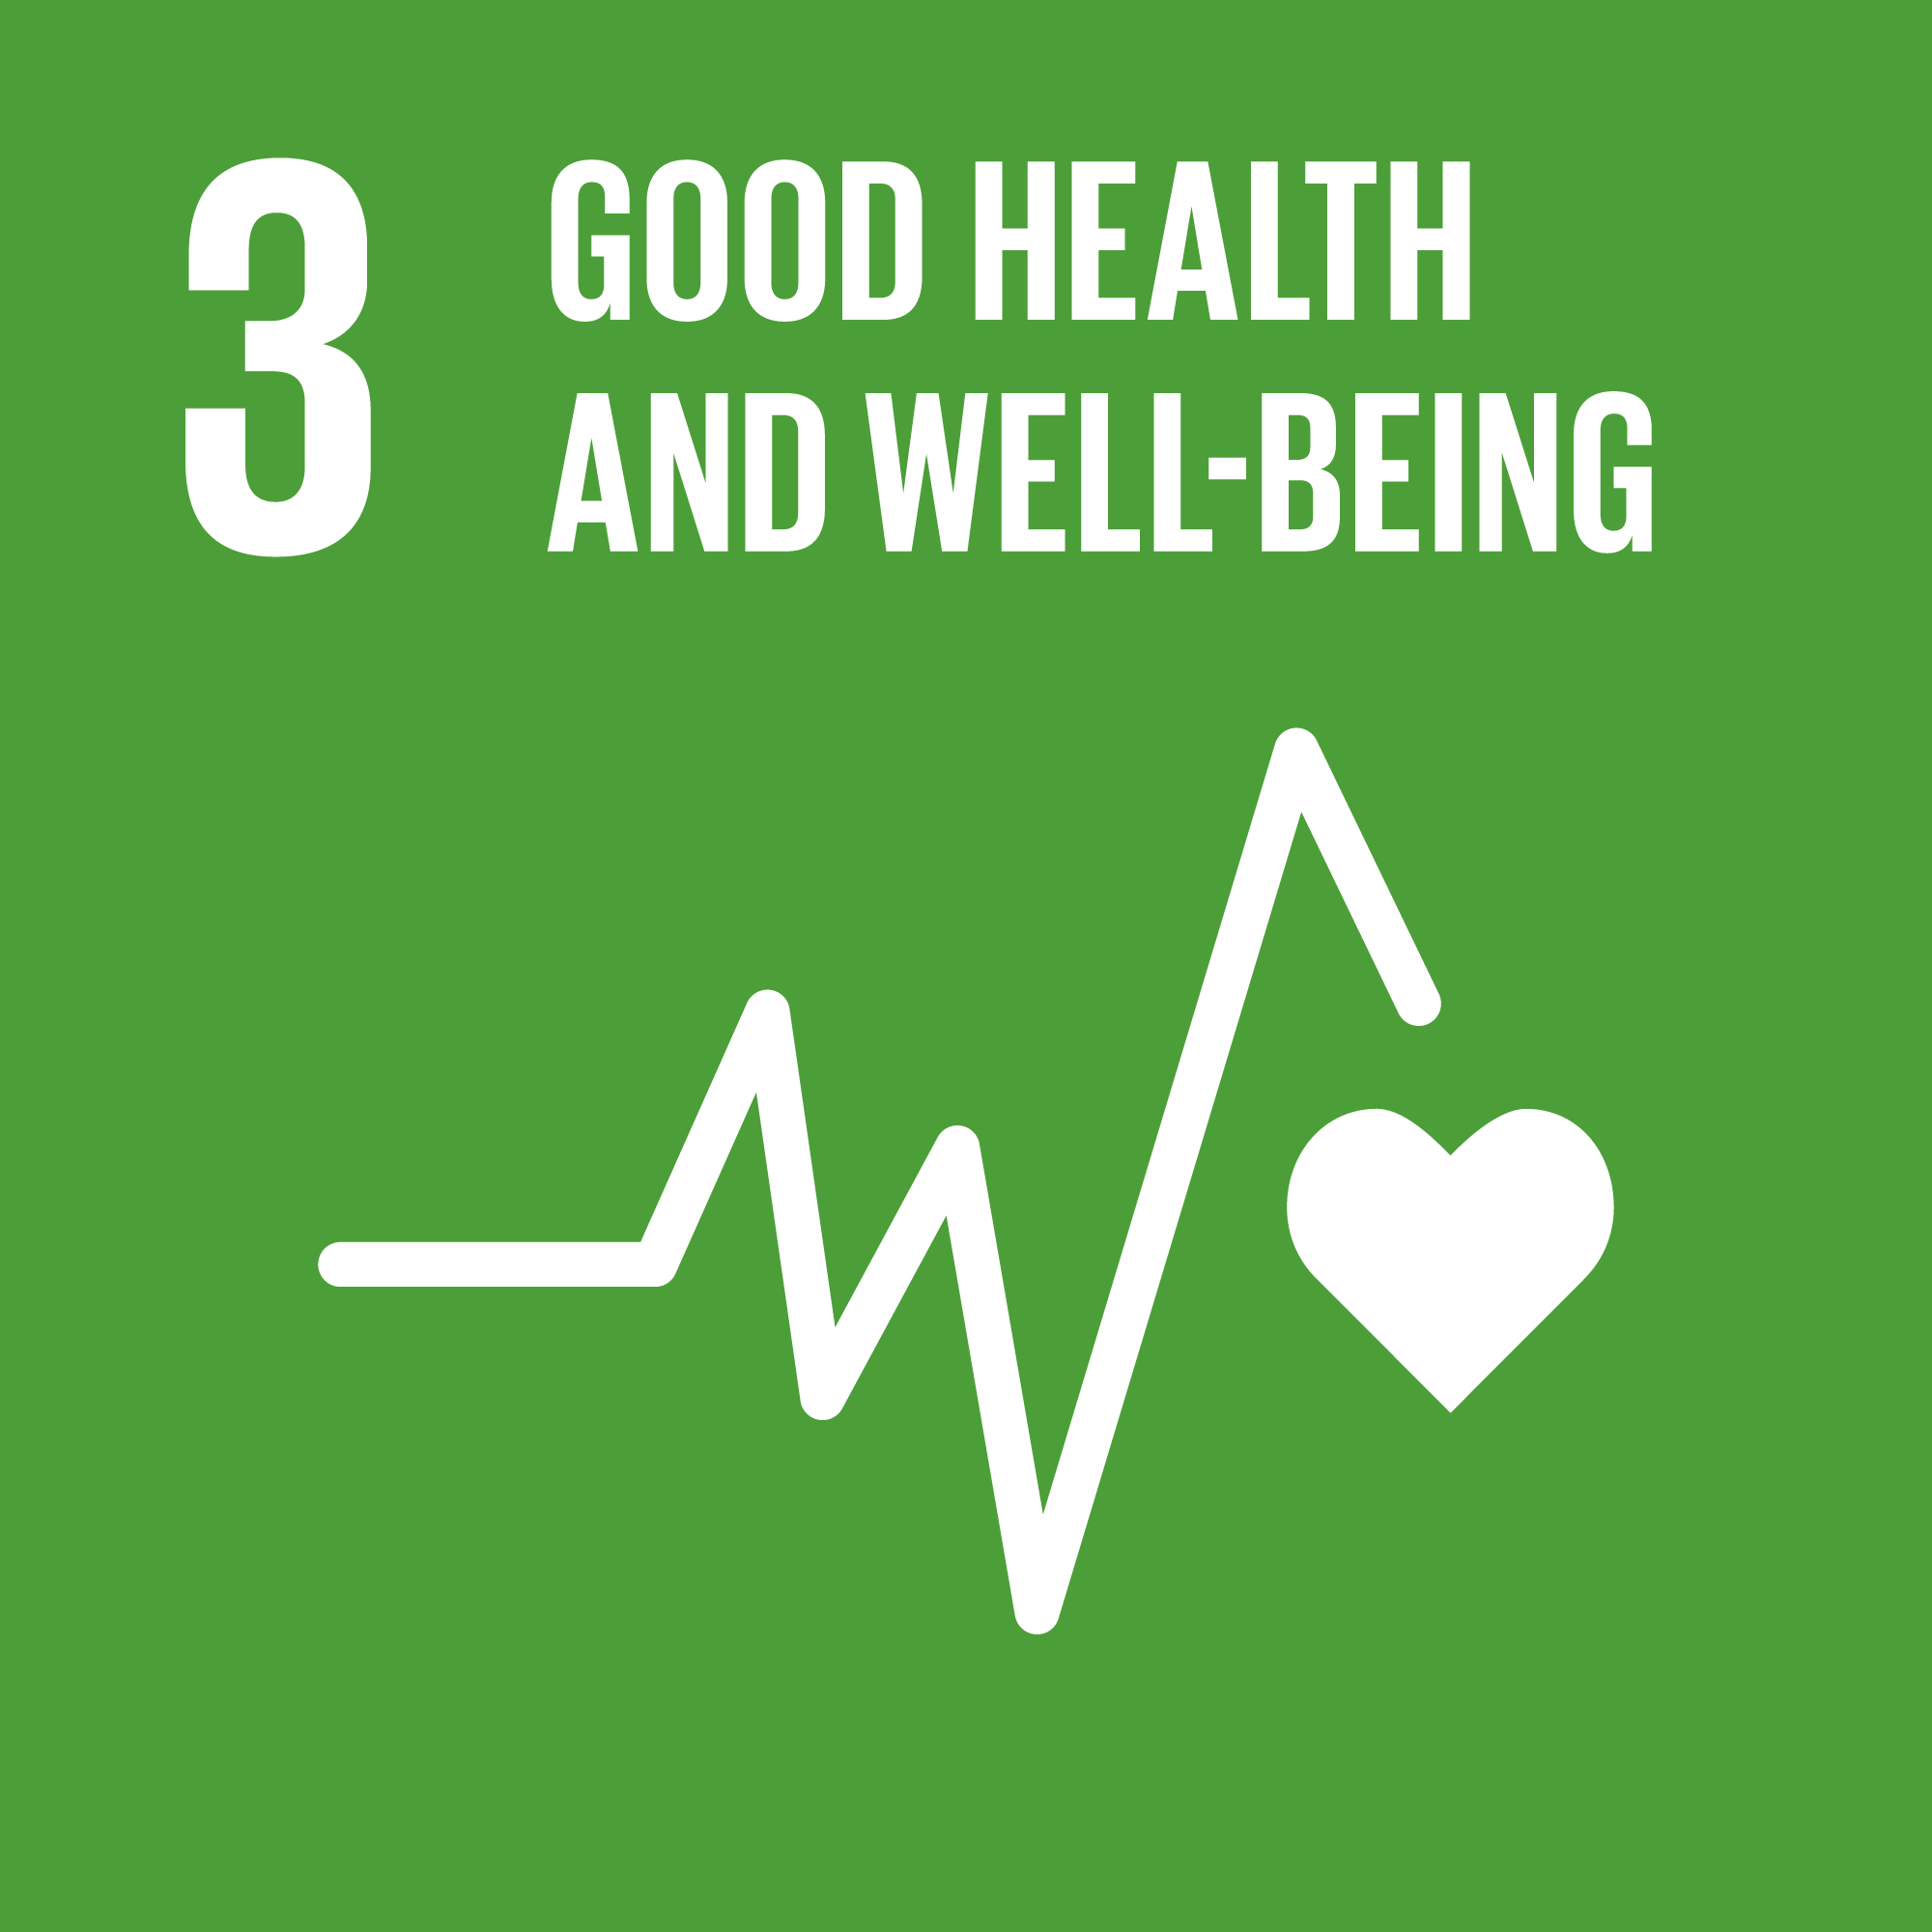 UNSDG goal number 3 Good Health